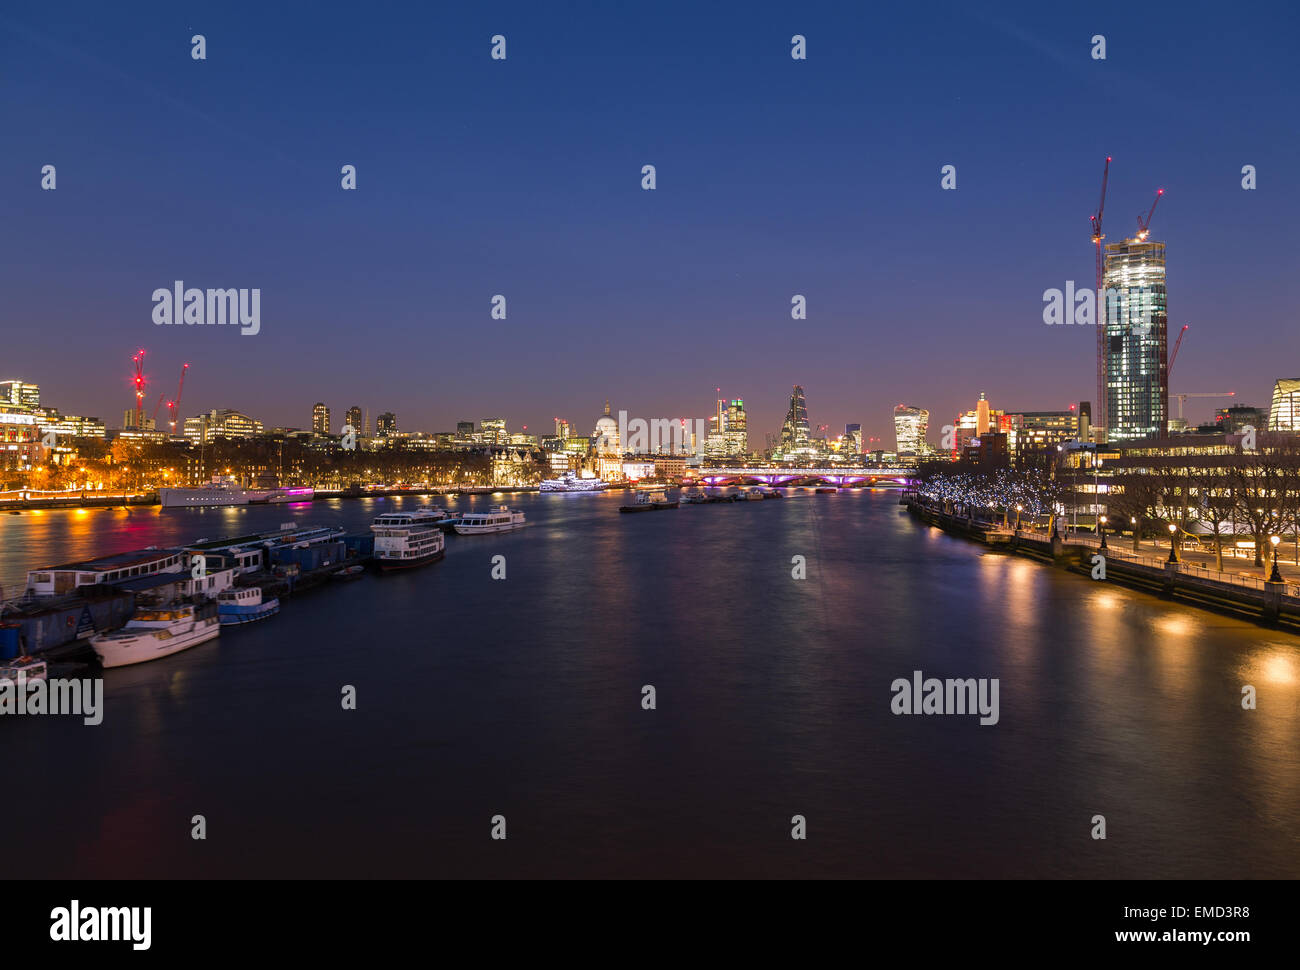 La ville de London Skyline at Dusk montrant des bateaux, des bâtiments et de la construction. Il y a copie espace dans l'image. Banque D'Images